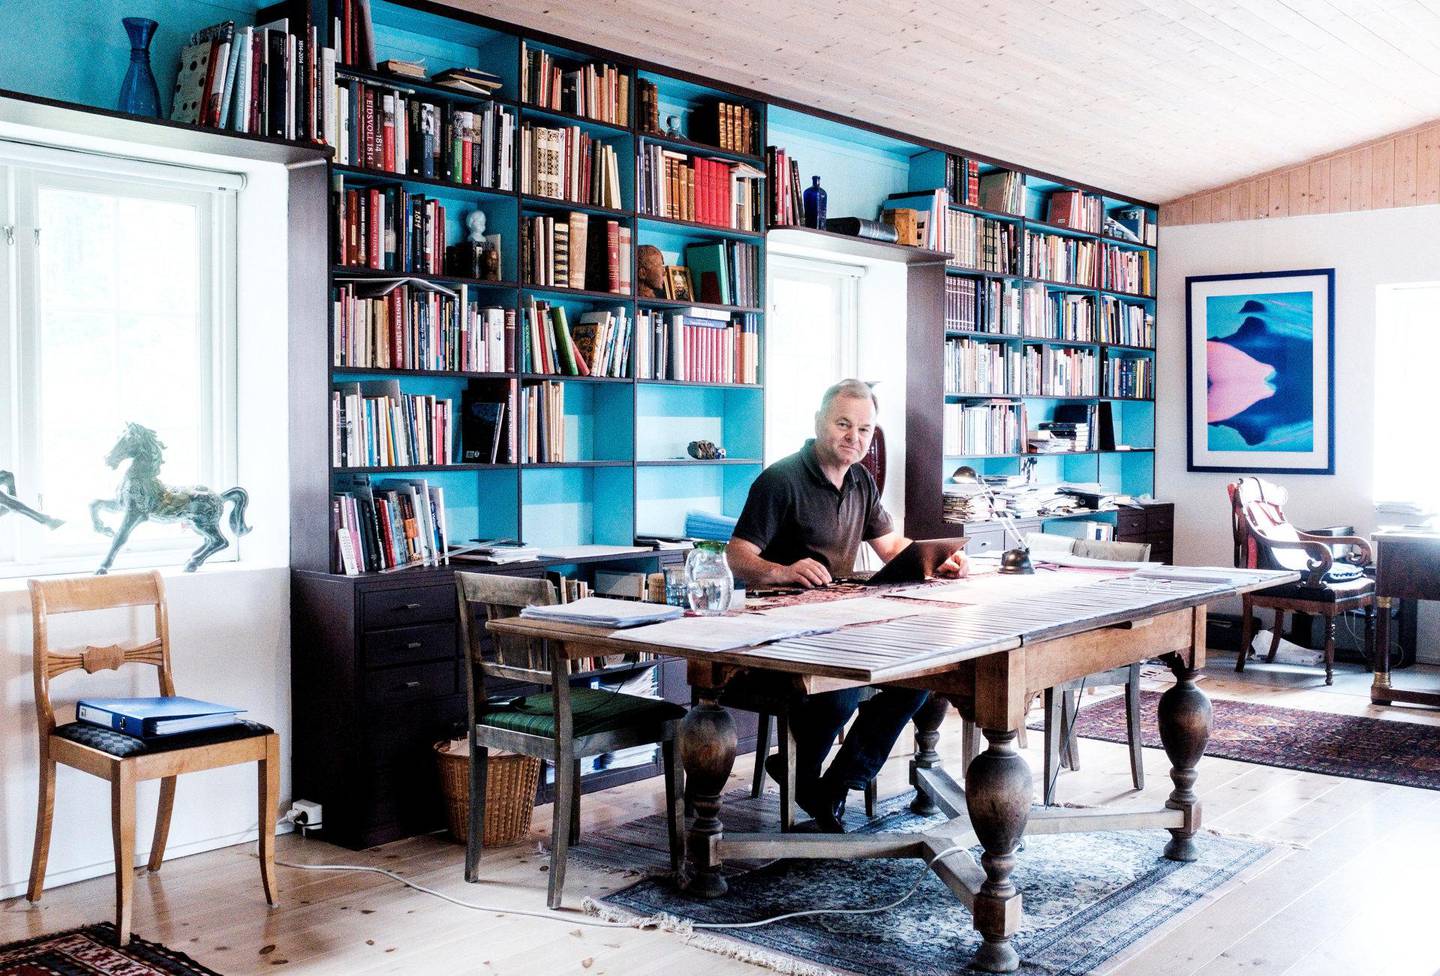 Etter år i toppen av politikken skal kulturmannen Olemic Thommessen dyrke den siden av seg mer. I boligen har han et digert skrivebord til egne formidlinger – og sin egen sal med scene i tilbygget, til bruk for oppsetninger.